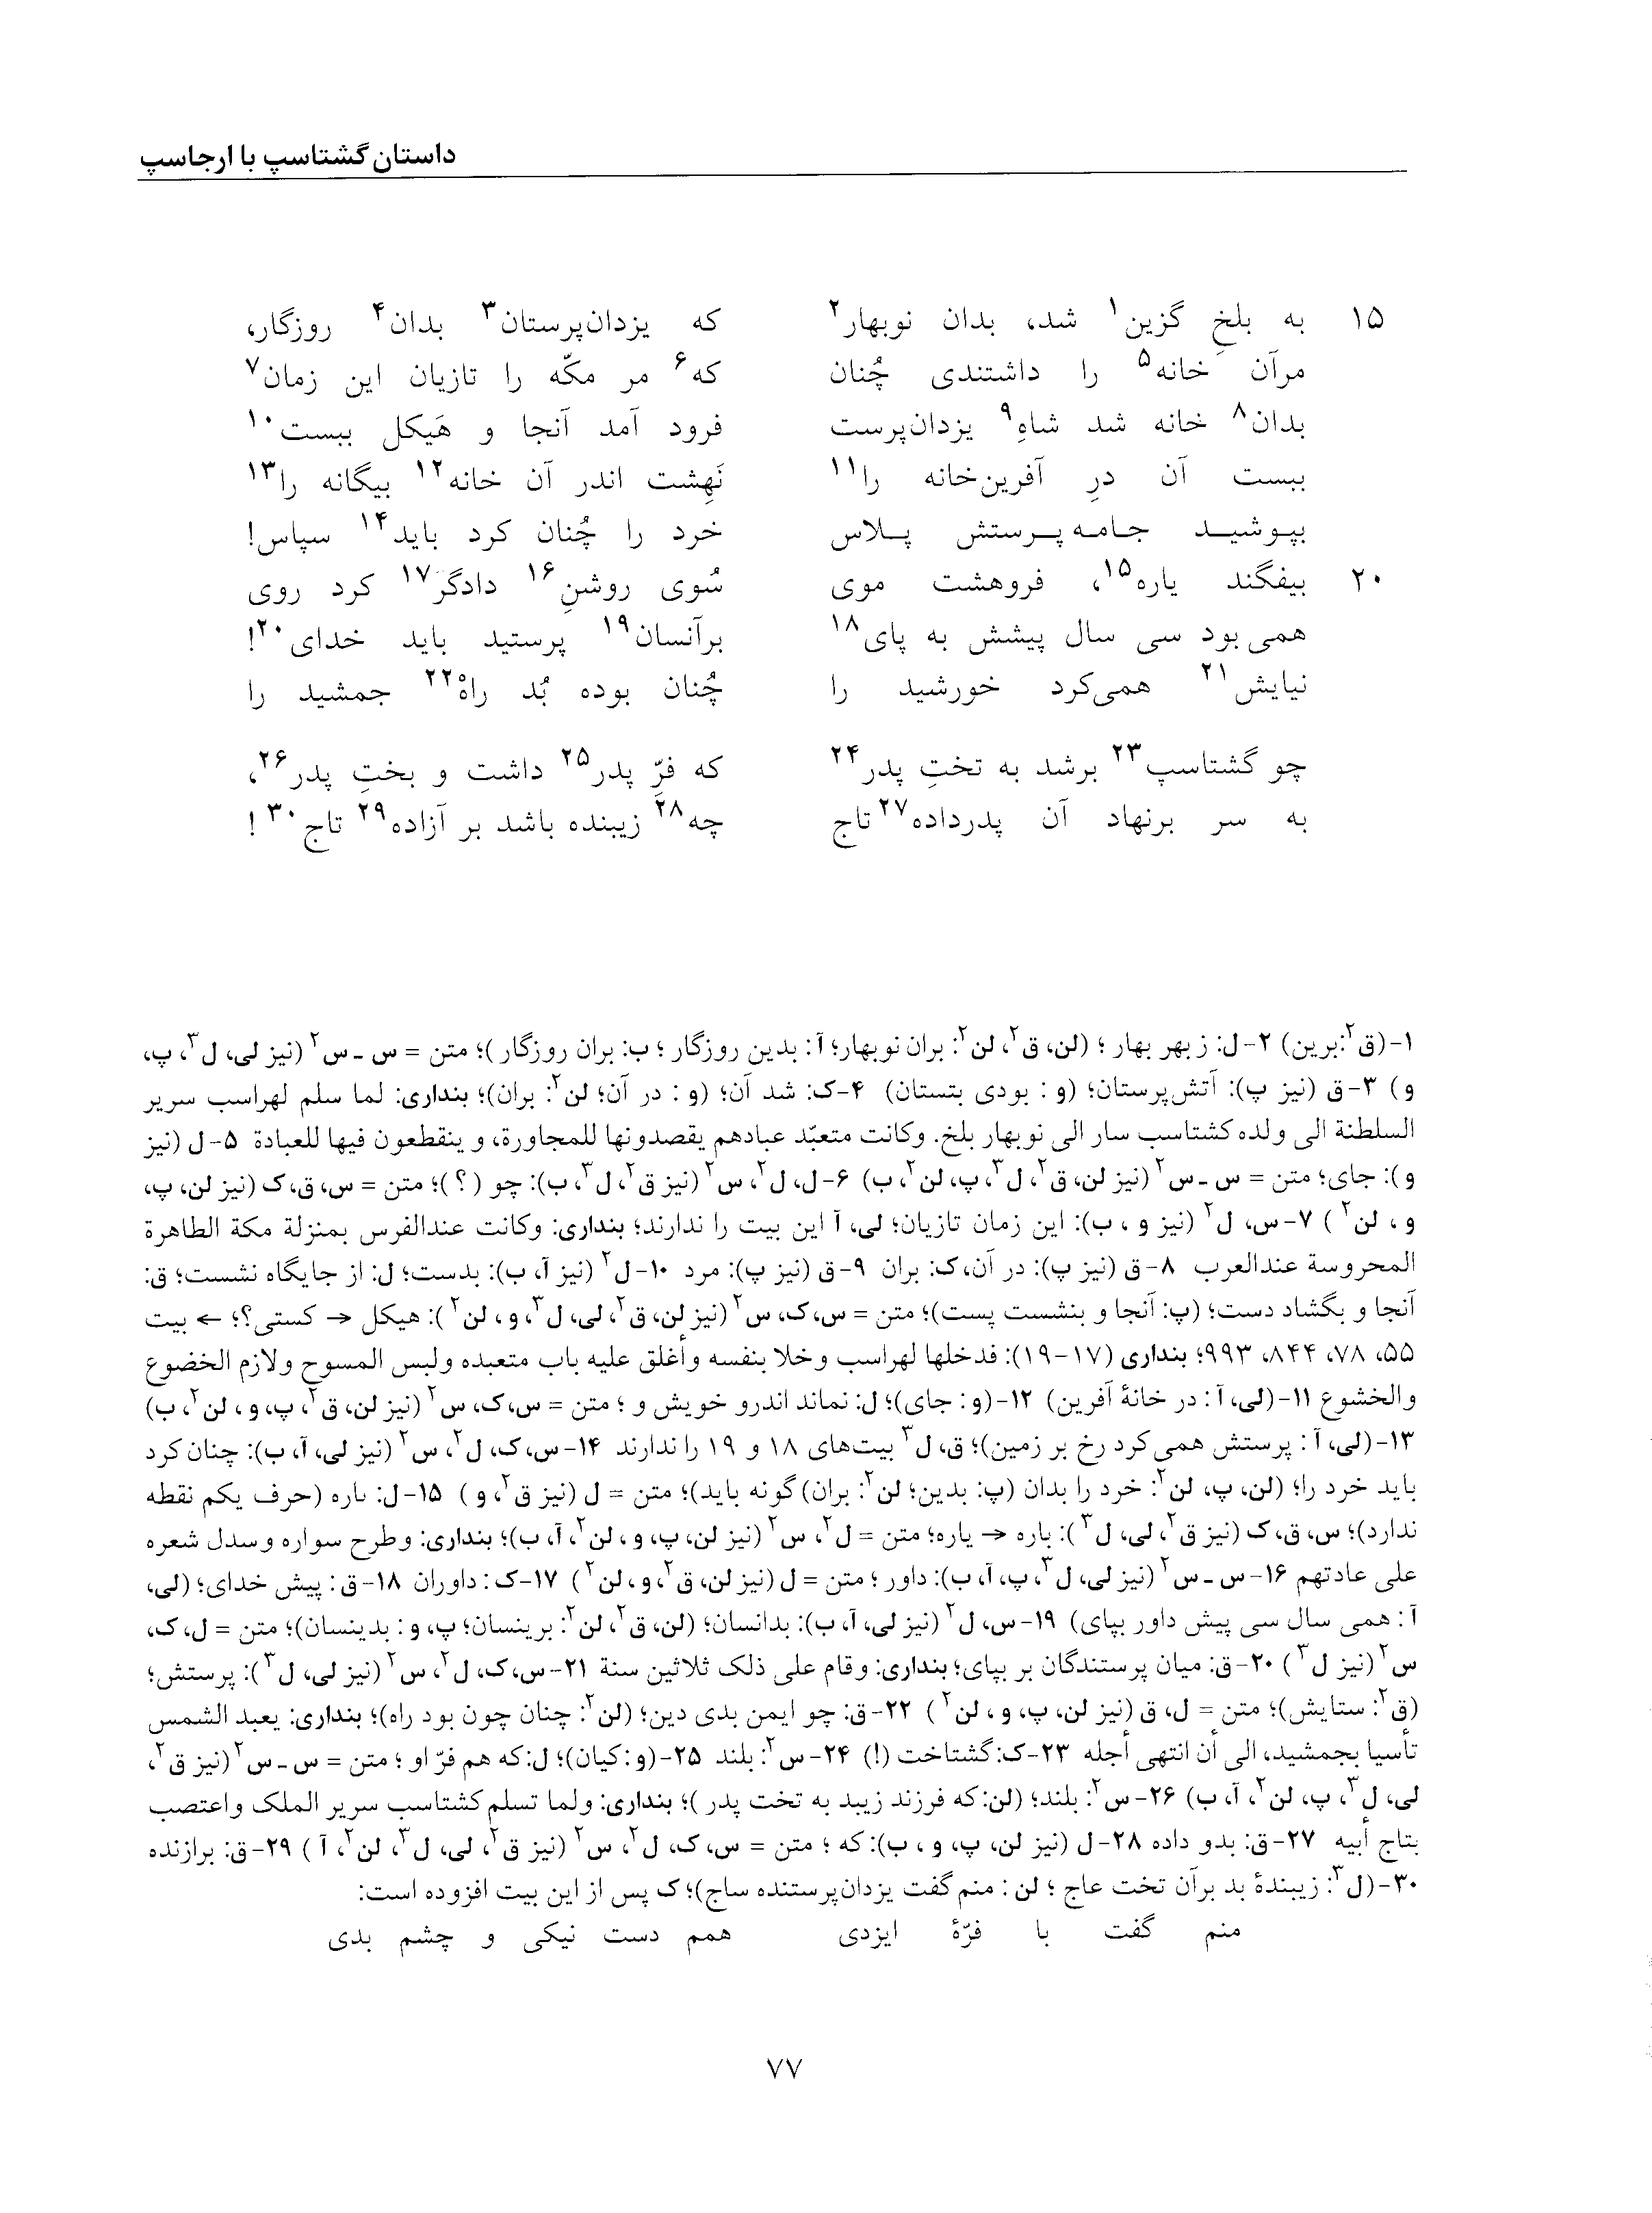 vol. 5, p. 77